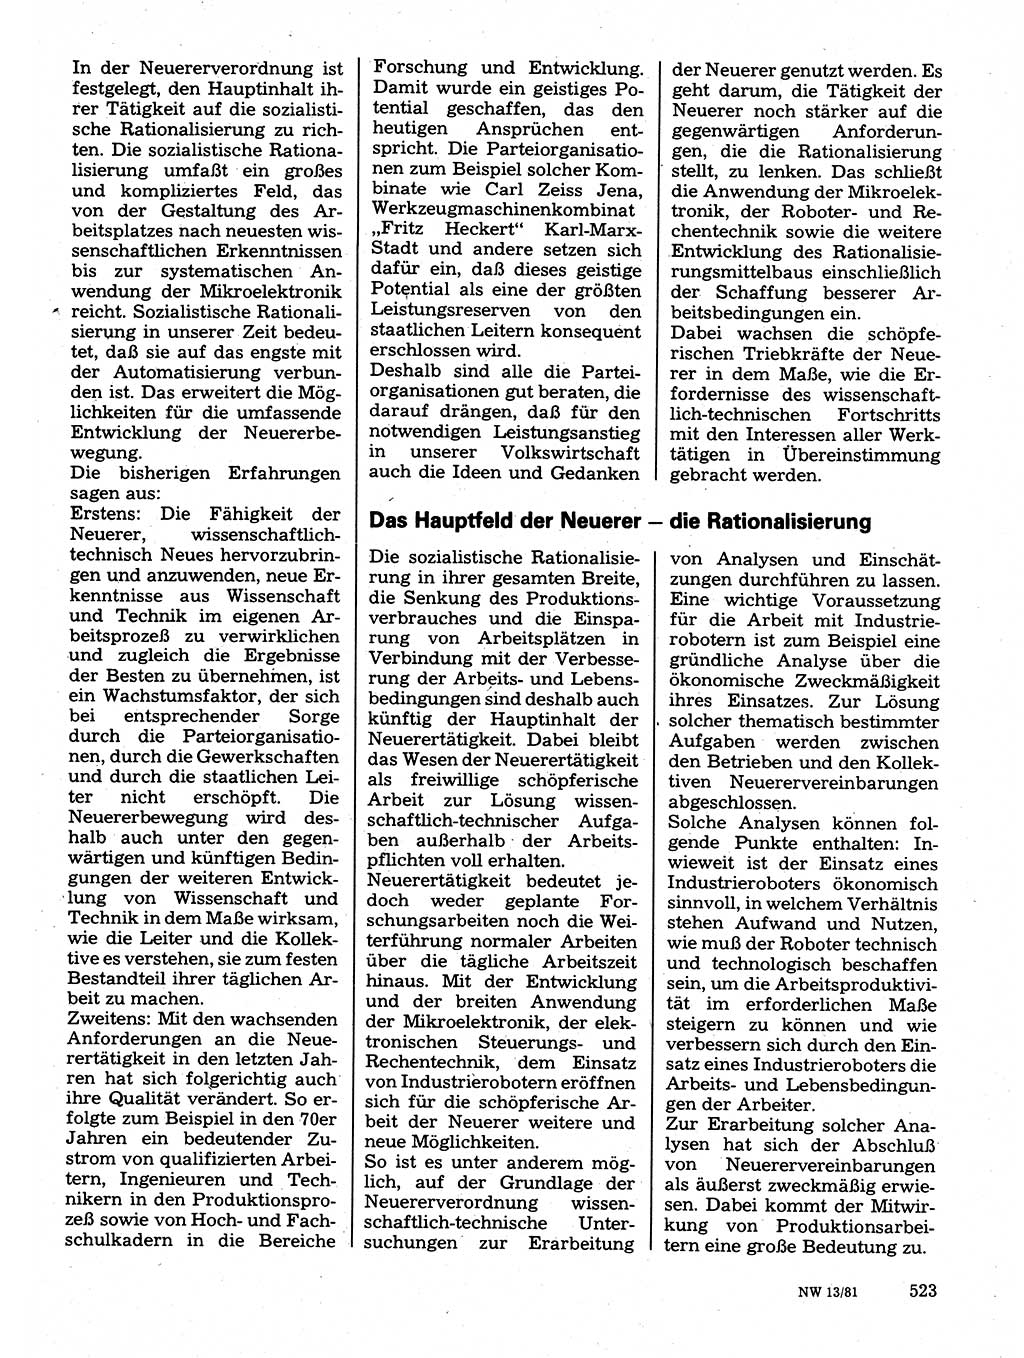 Neuer Weg (NW), Organ des Zentralkomitees (ZK) der SED (Sozialistische Einheitspartei Deutschlands) für Fragen des Parteilebens, 36. Jahrgang [Deutsche Demokratische Republik (DDR)] 1981, Seite 523 (NW ZK SED DDR 1981, S. 523)